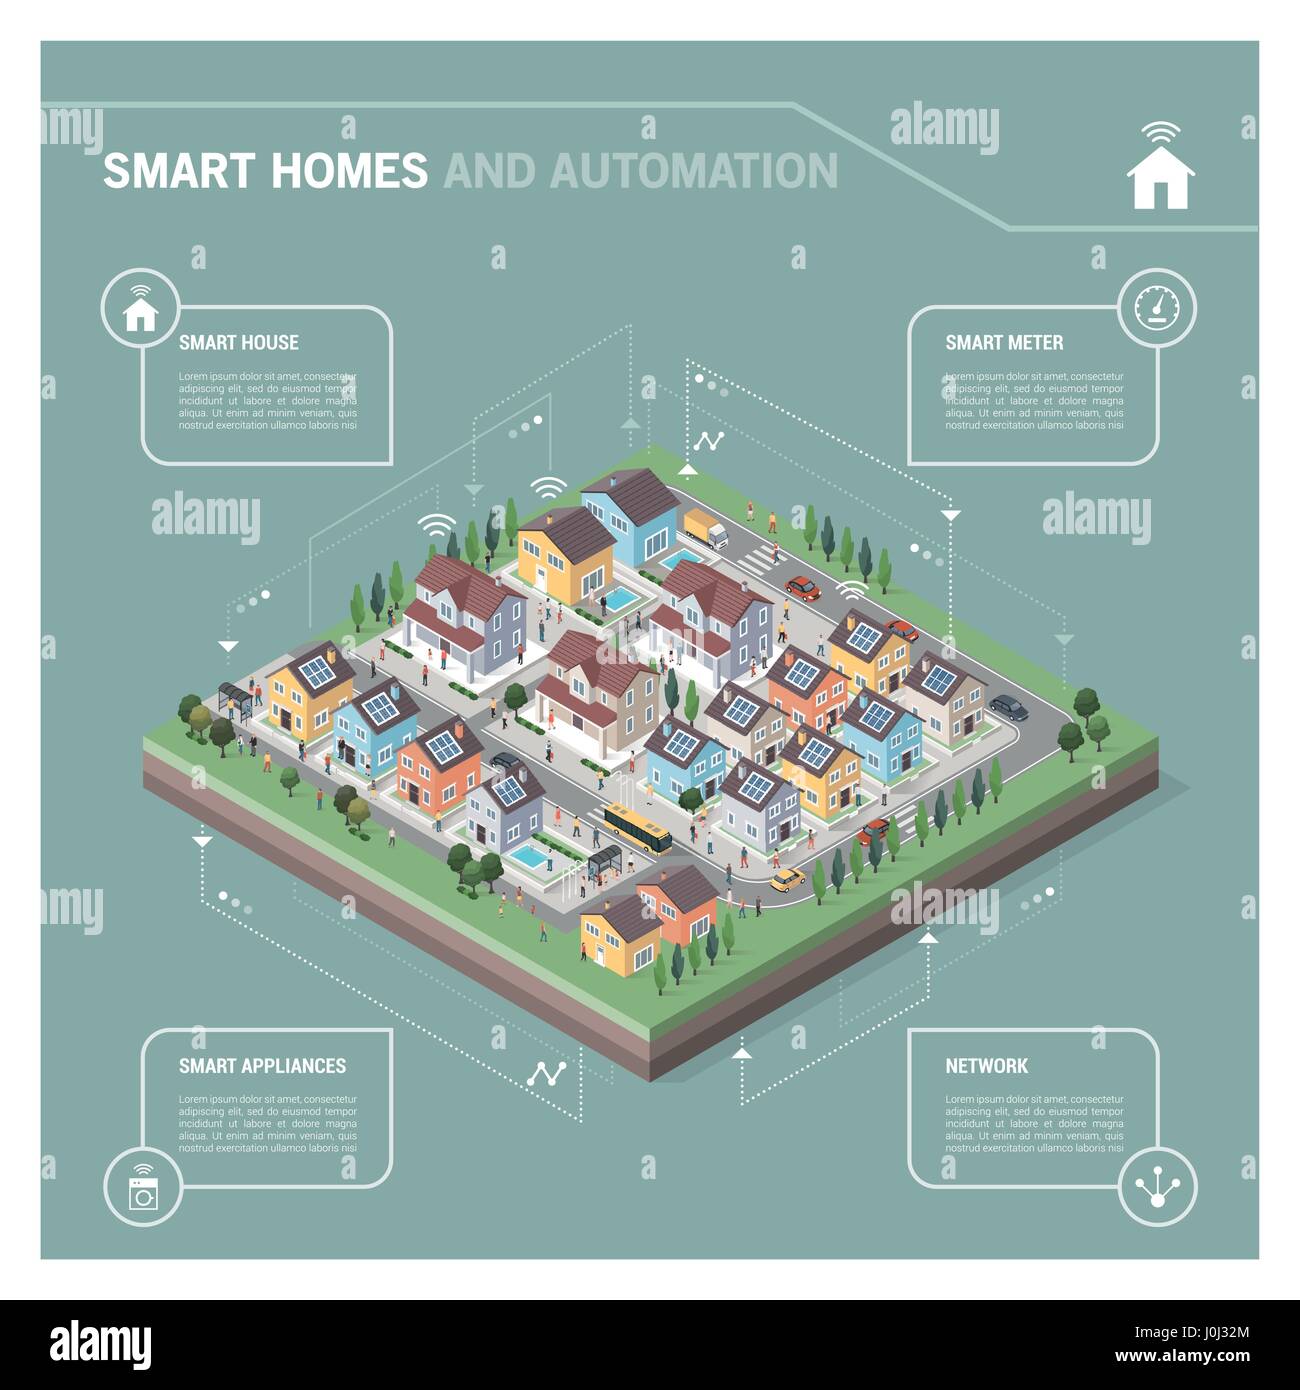 Vektor-isometrische Wohngebiet mit Häusern, Menschen, Straßen und Fahrzeuge: intelligente Häuser und Konnektivität Konzept Infografik Stock Vektor